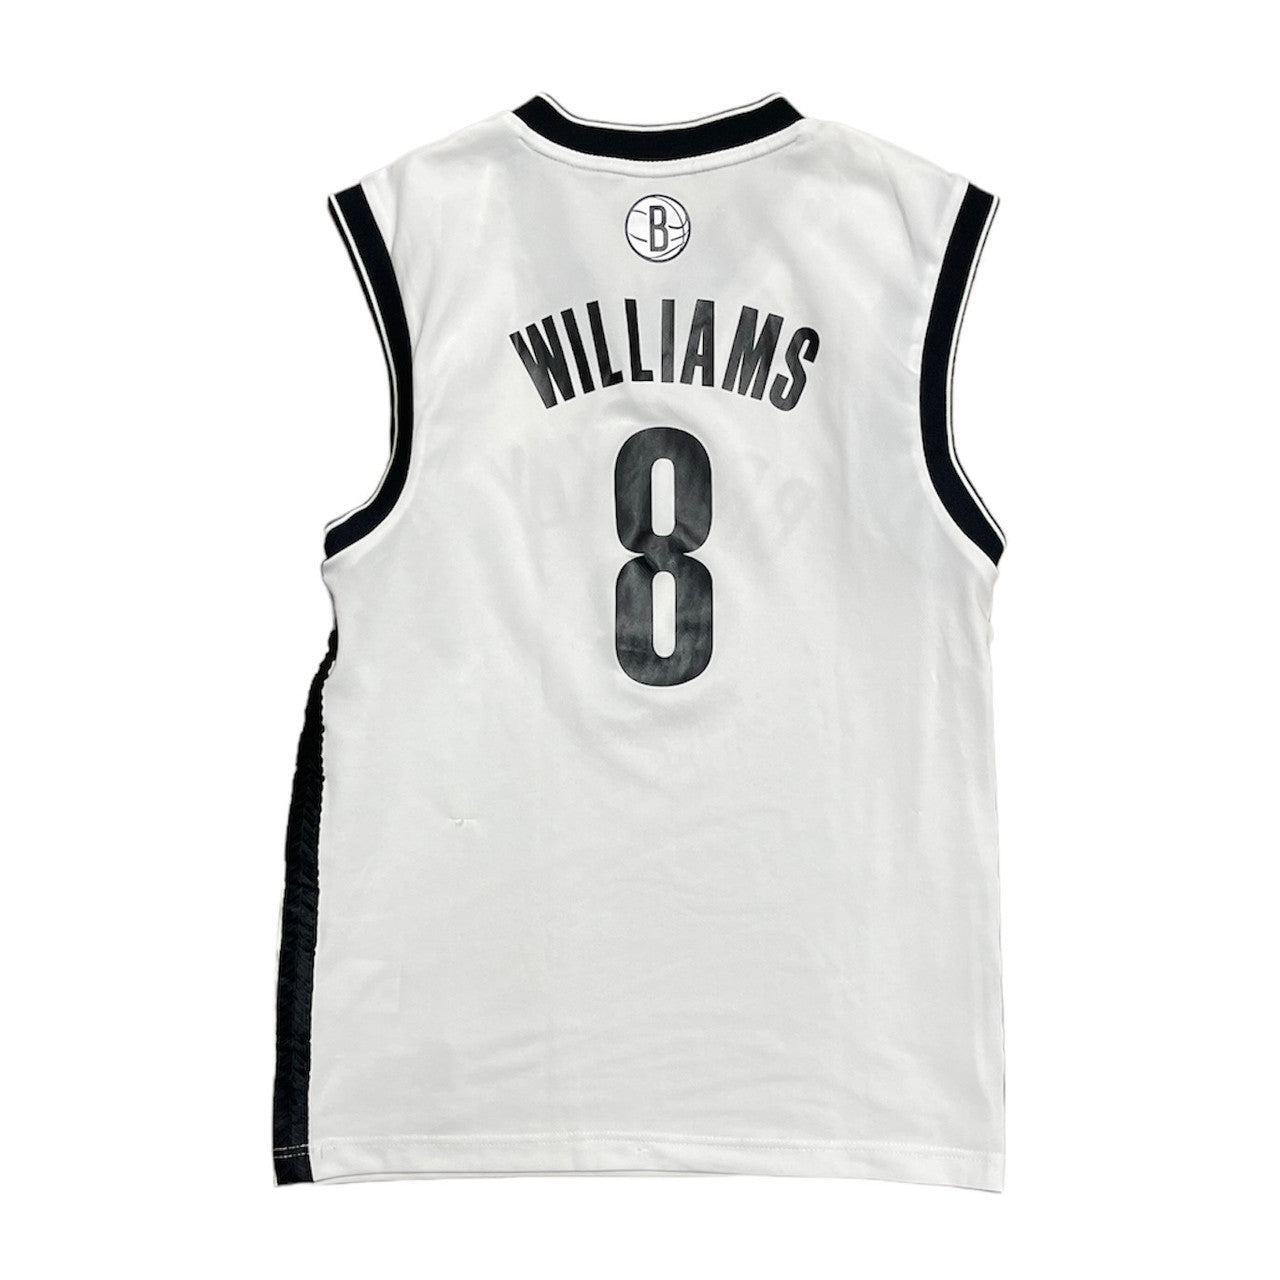 Adidas Brooklyn Nets Williams NBA Jersey